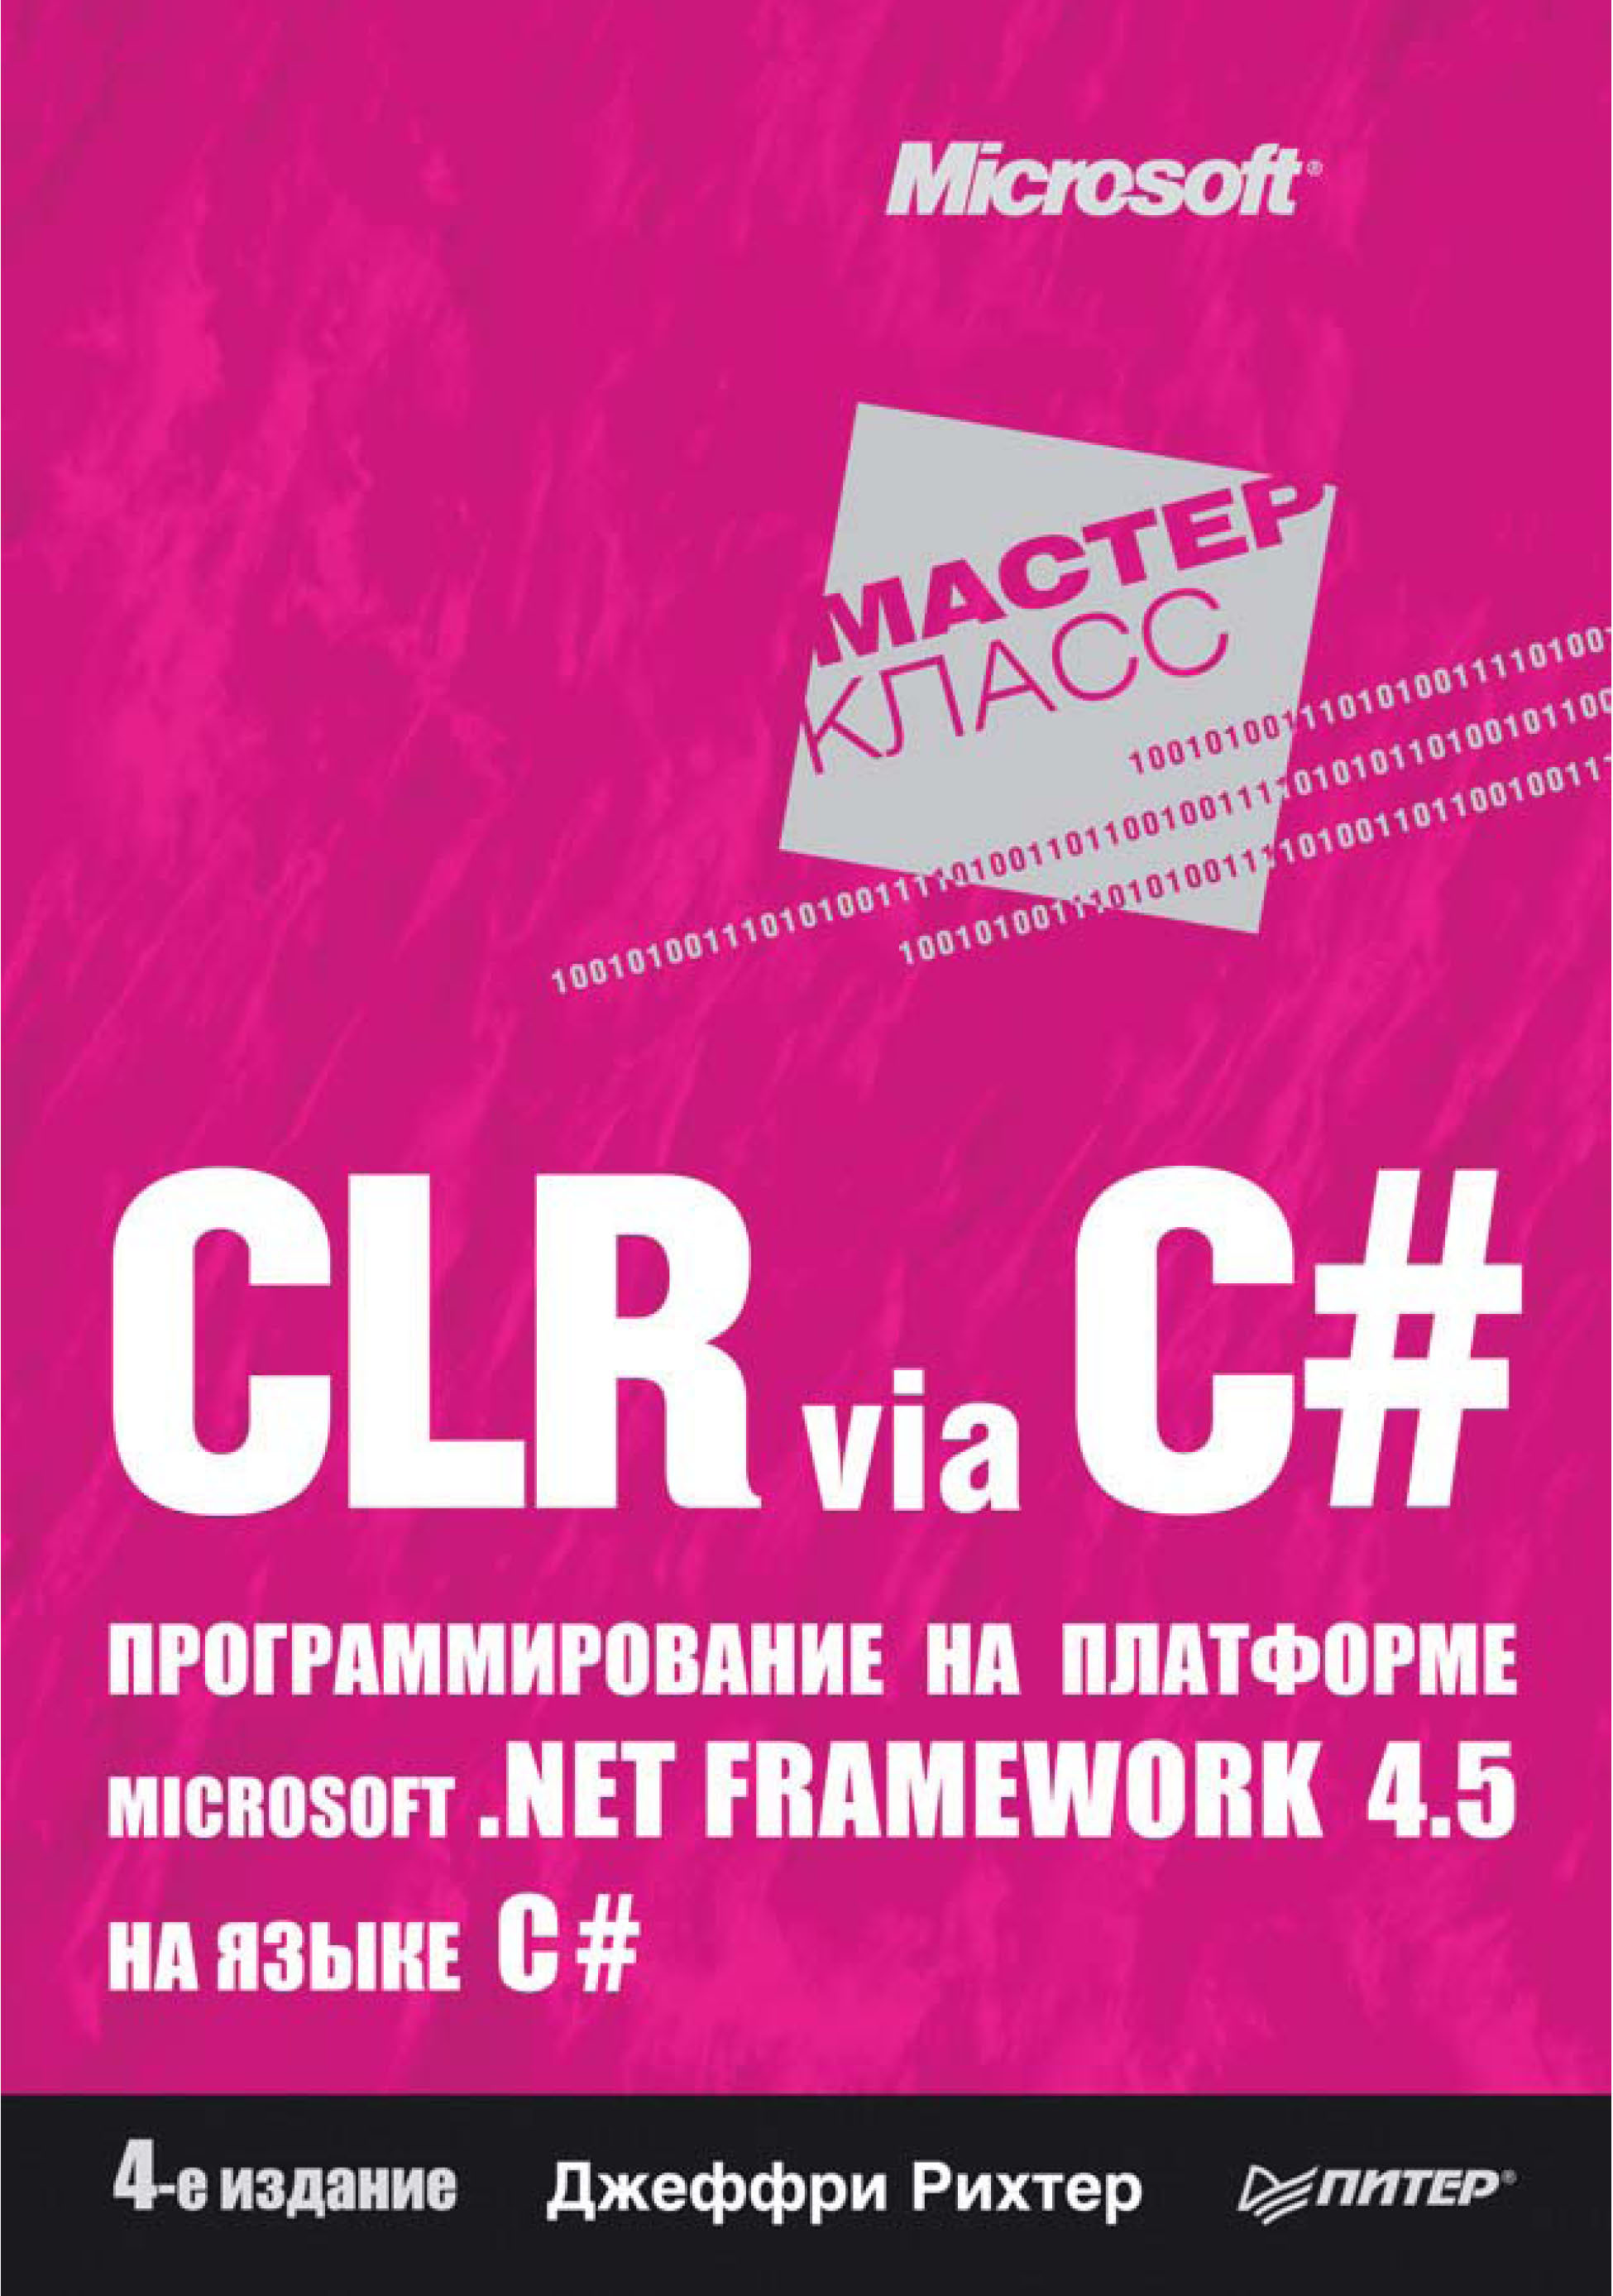 Книга Мастер-класс (Питер) CLR via C#. Программирование на платформе Microsoft .NET Framework 4.5 на языке C# созданная Джеффри Рихтер, Е. А. Матвеев может относится к жанру зарубежная компьютерная литература, программирование. Стоимость электронной книги CLR via C#. Программирование на платформе Microsoft .NET Framework 4.5 на языке C# с идентификатором 11643433 составляет 699.00 руб.